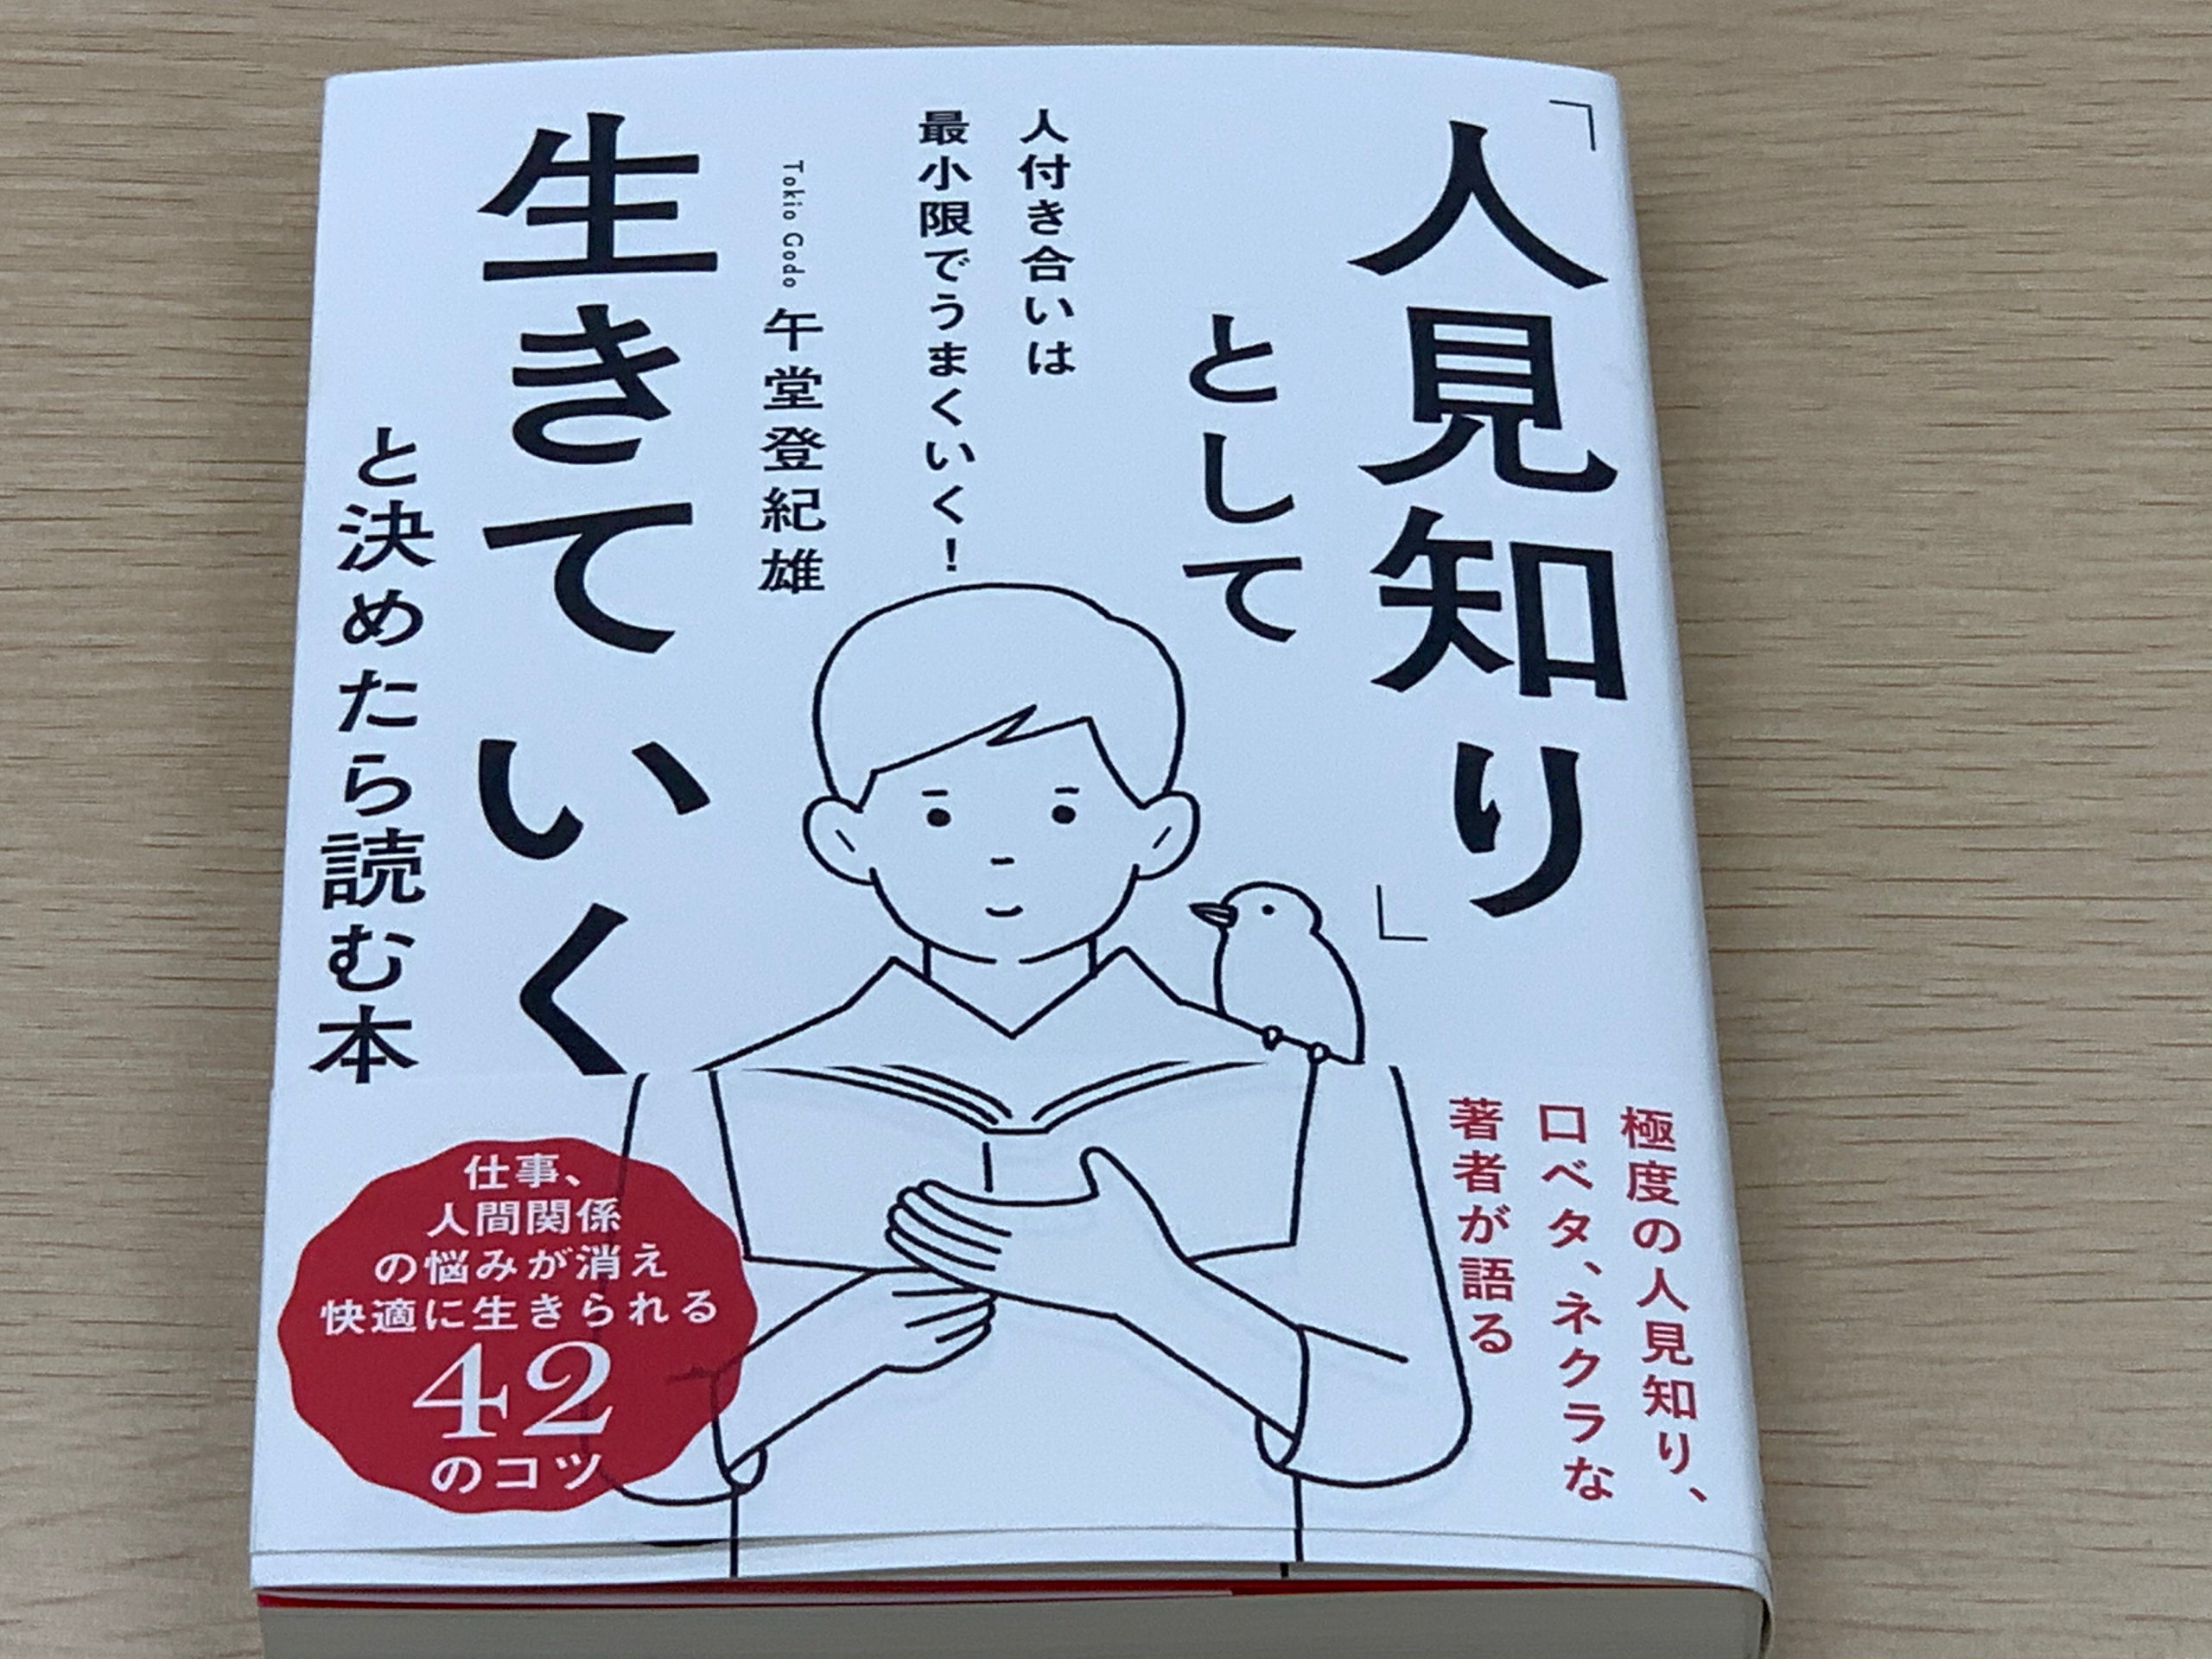 午堂登紀雄氏著「人見知りとして生きていくと決めたら読む本」の書評です